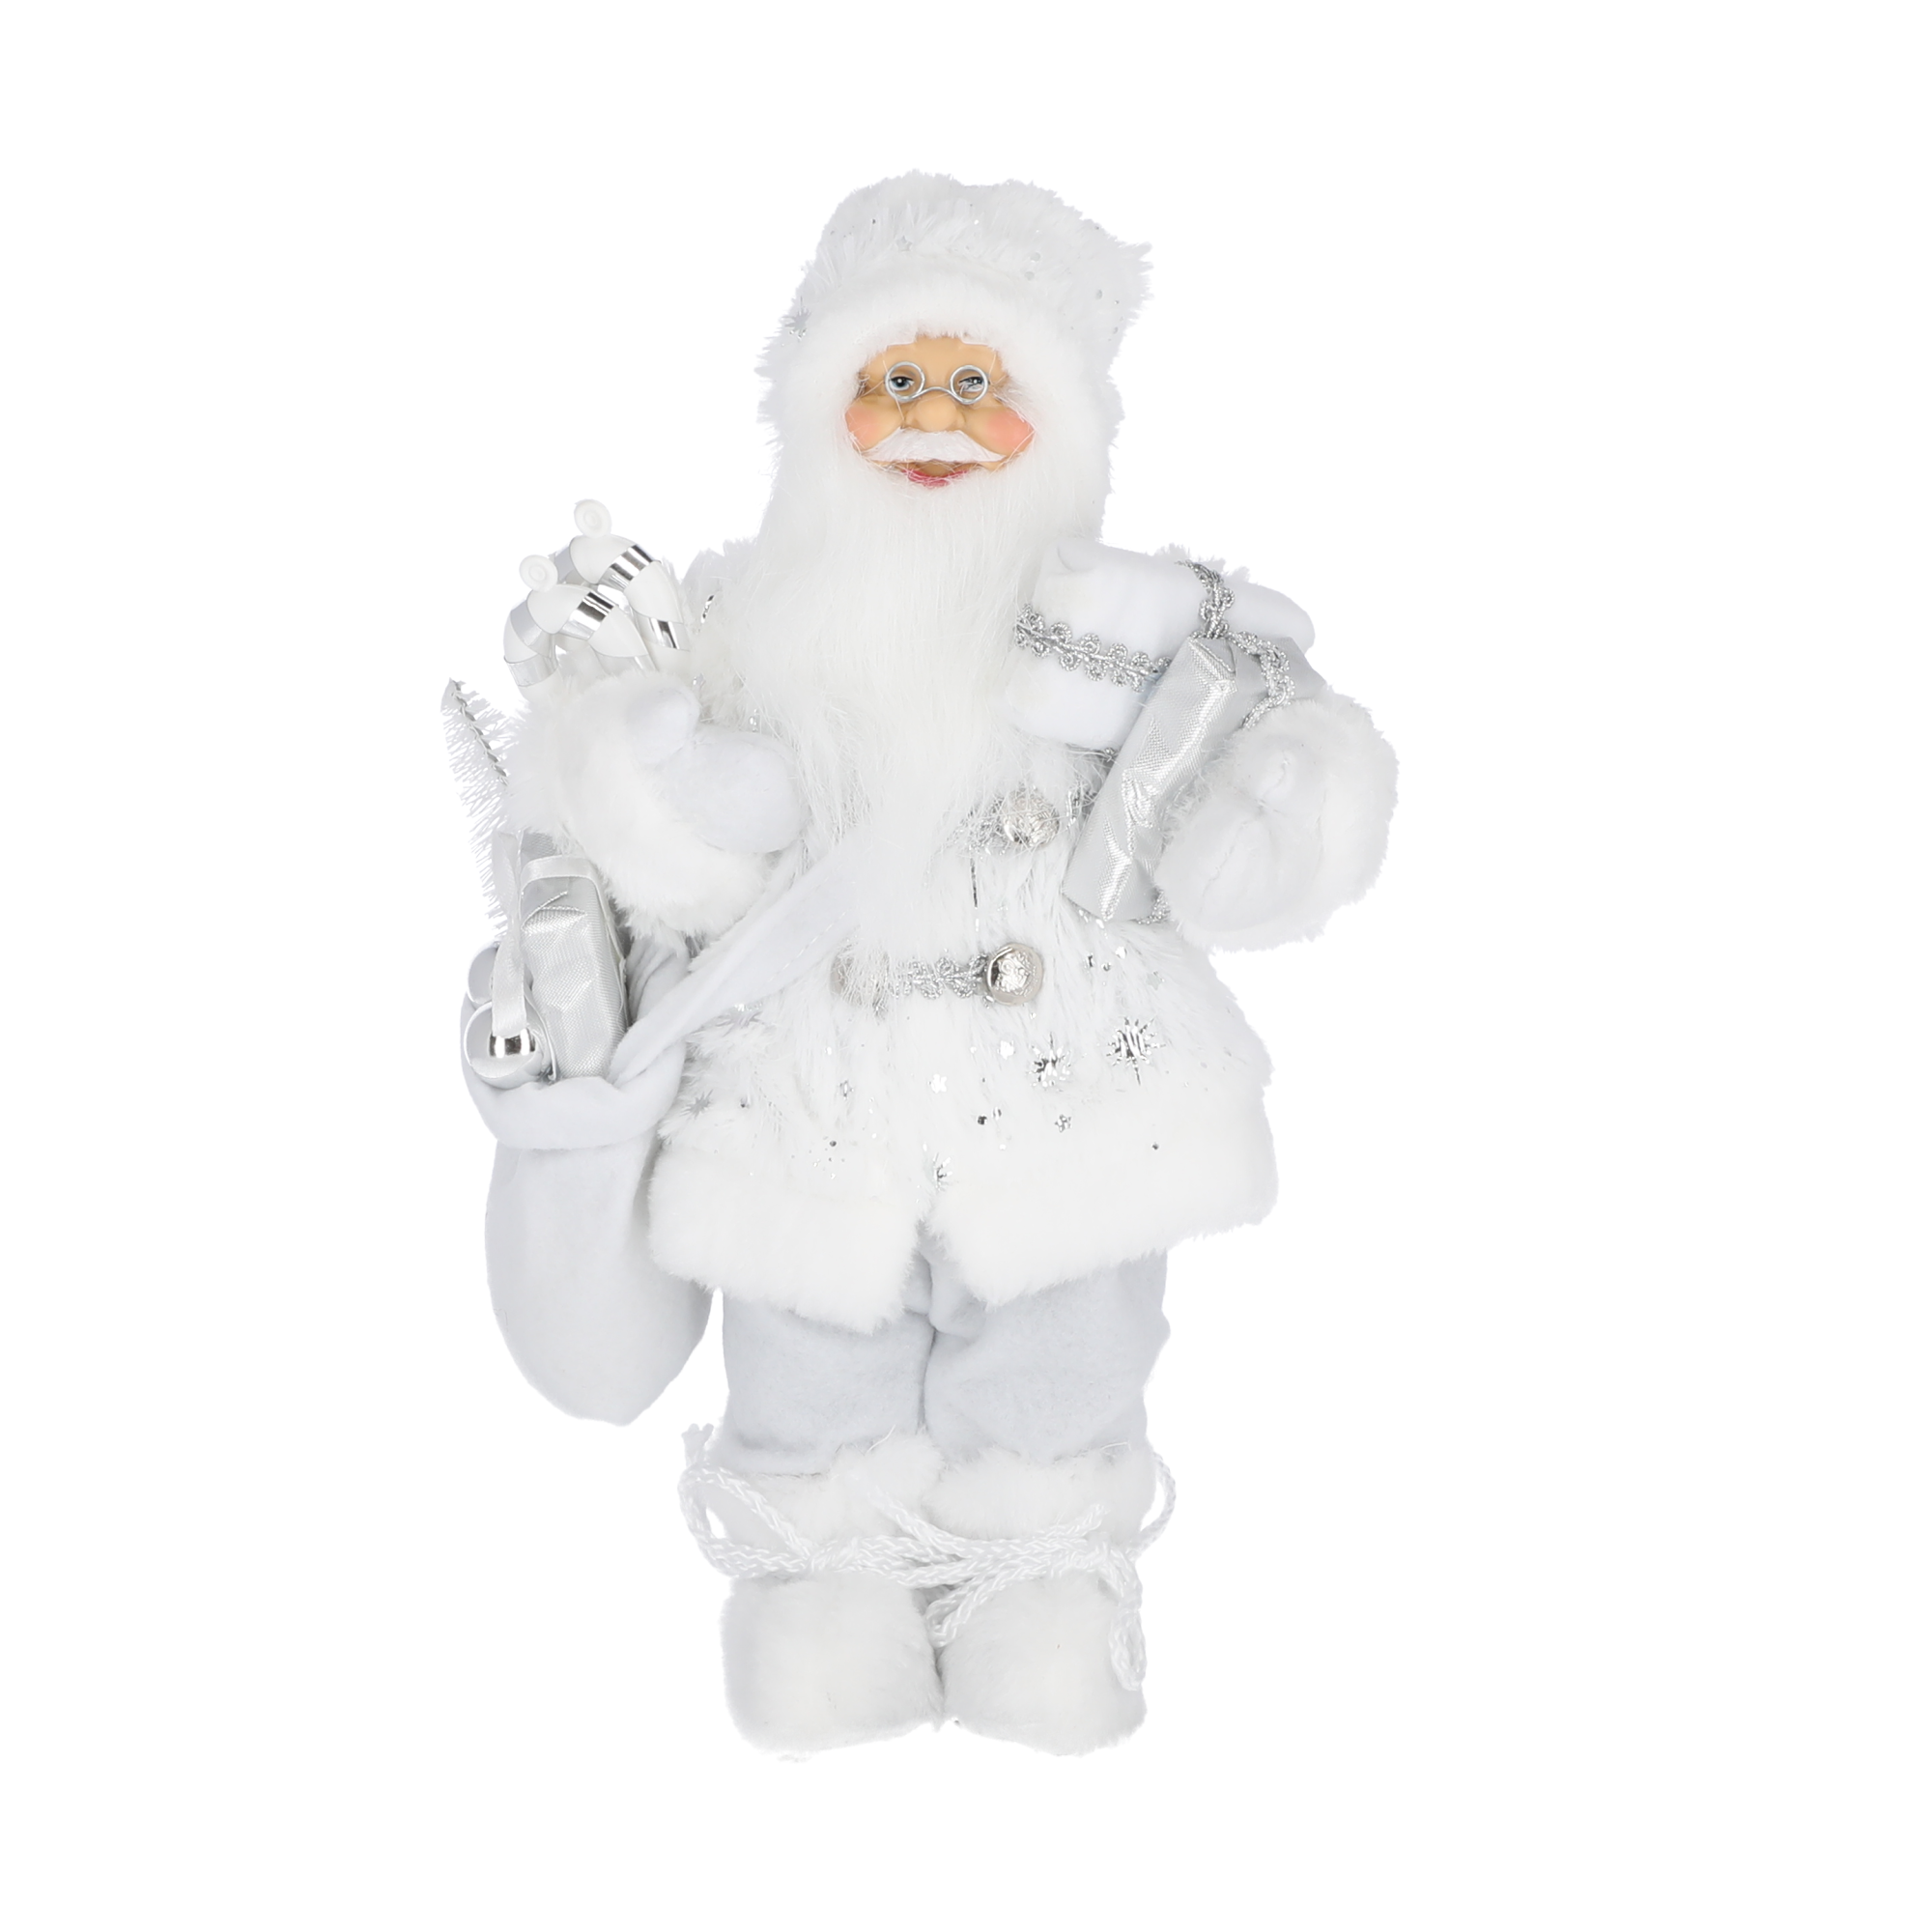 Dekofigur 'Weihnachtsmann' weiß/silberfarben 37 cm + product picture